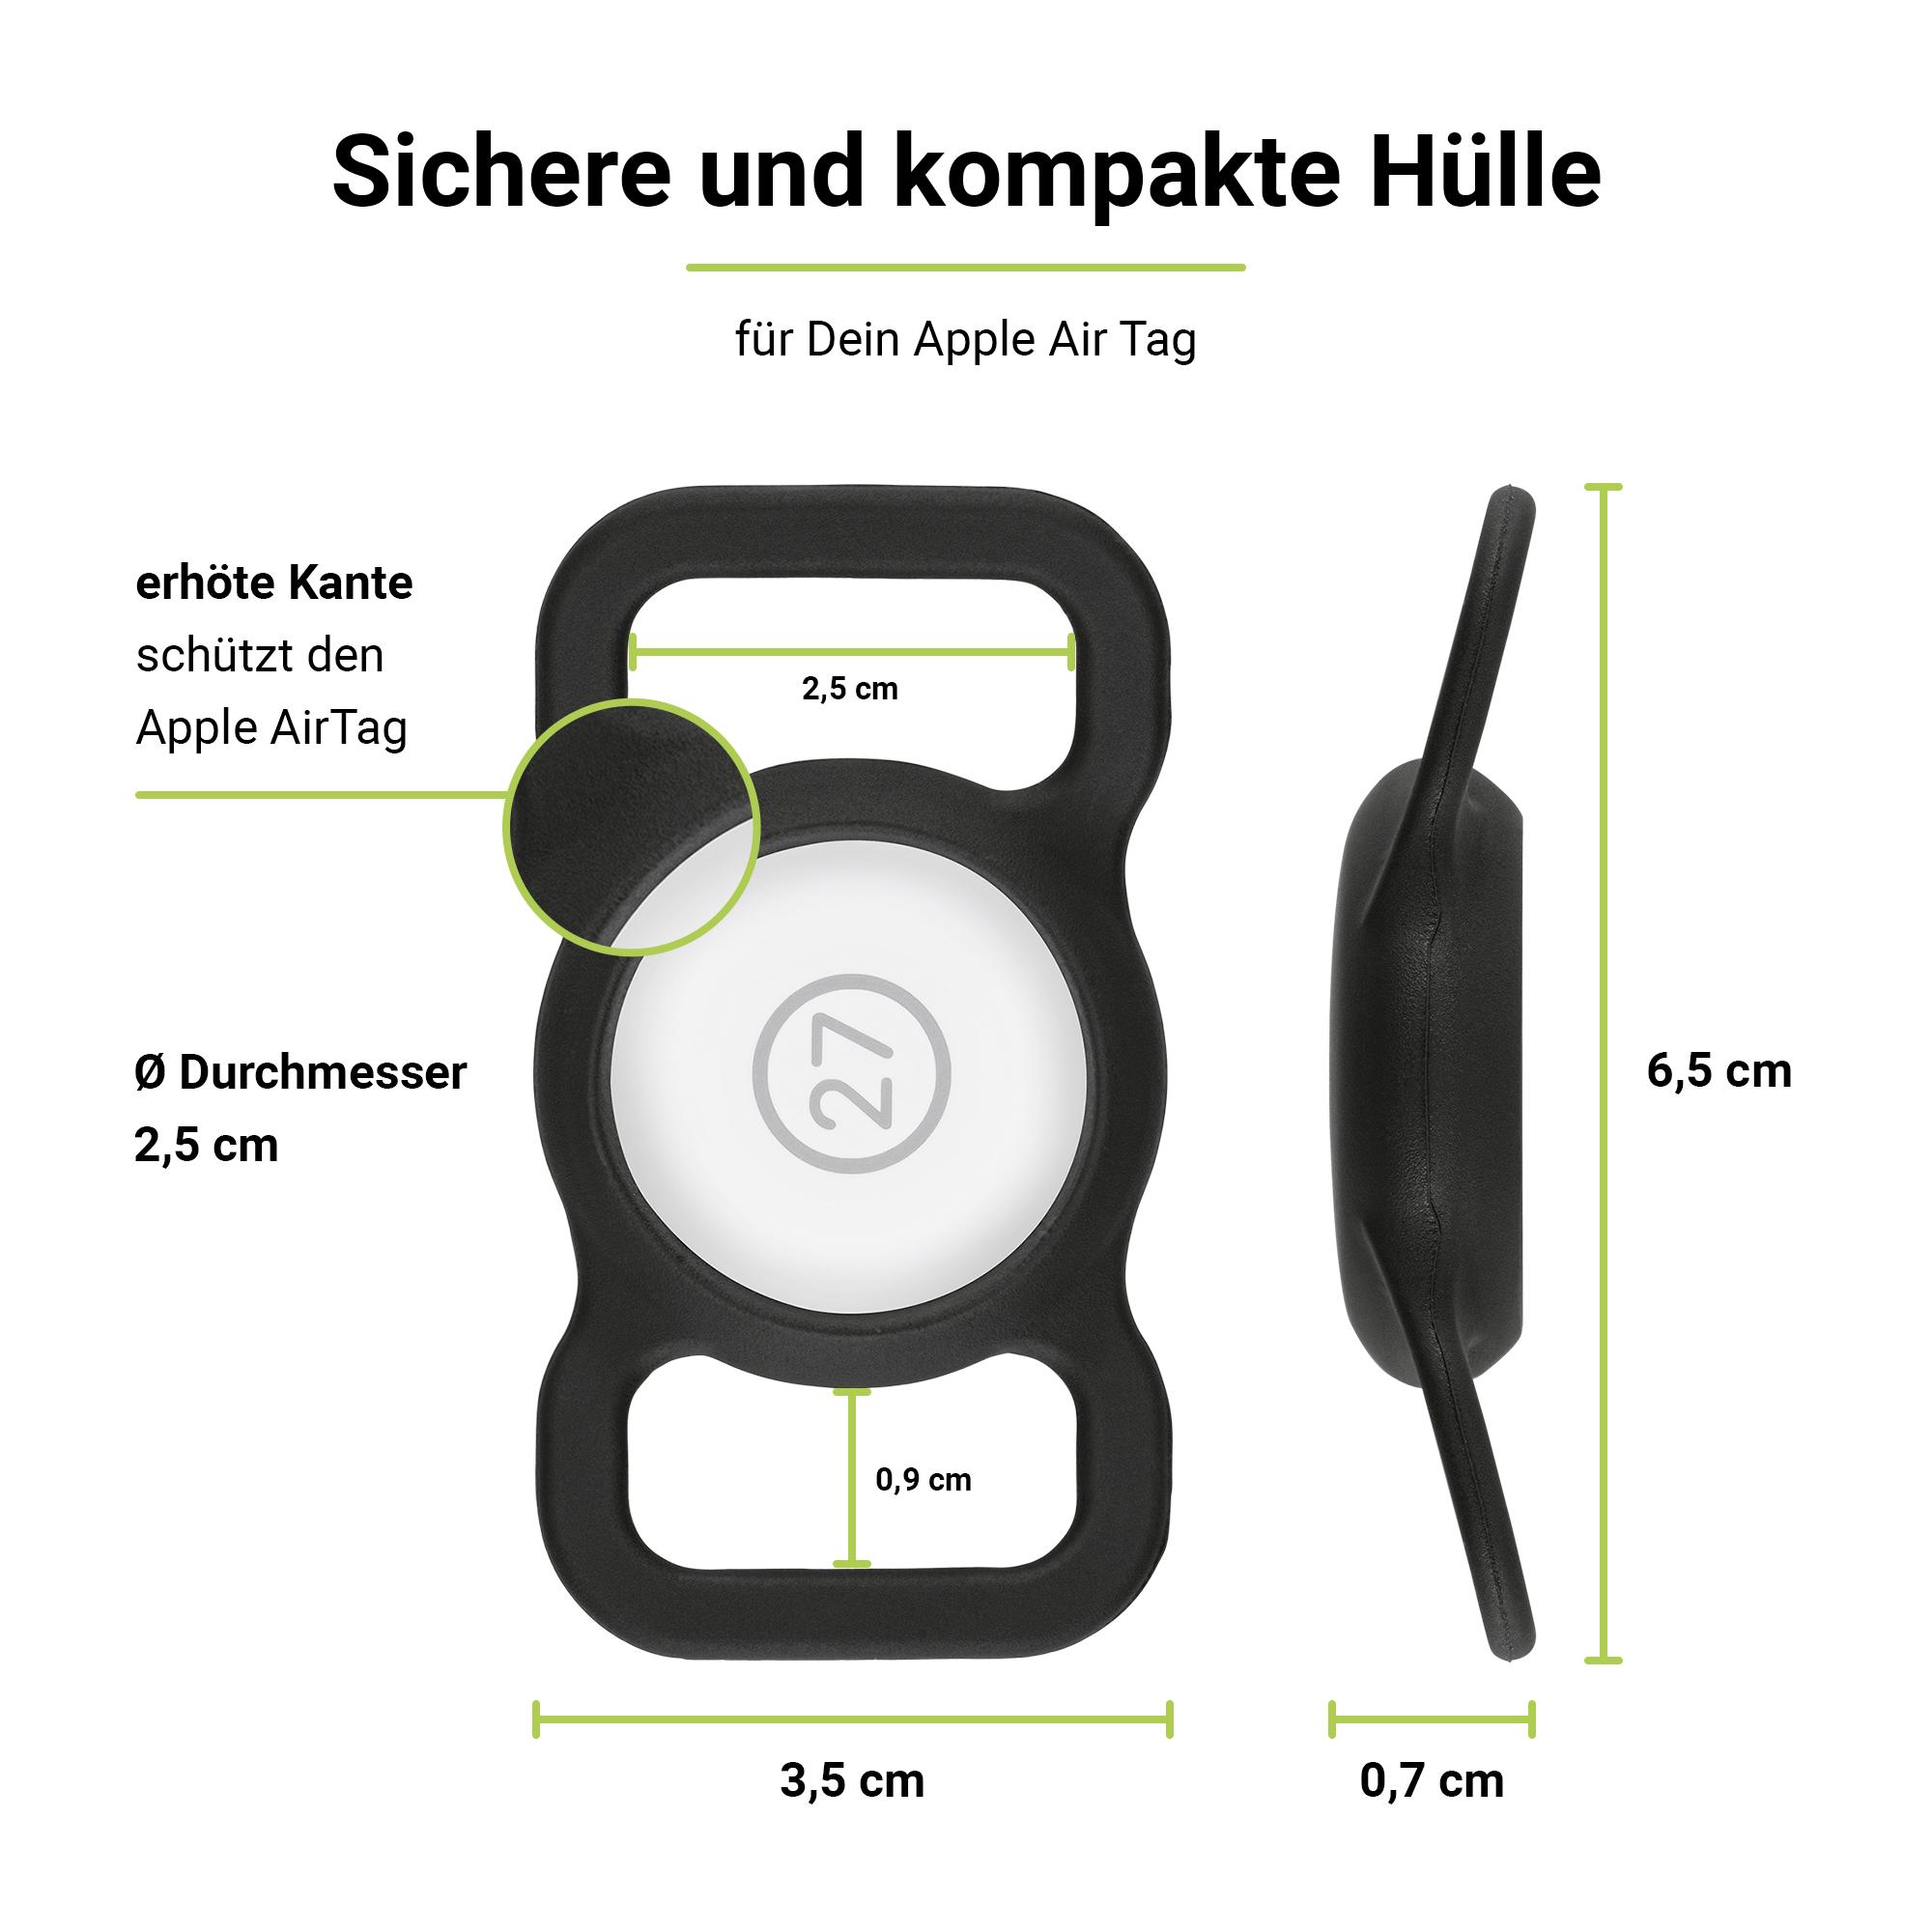 ARTWIZZ PetStrap Halterung 2x Schwarz GPS-Tracker Halsband AirTag Befestigung von Apple als